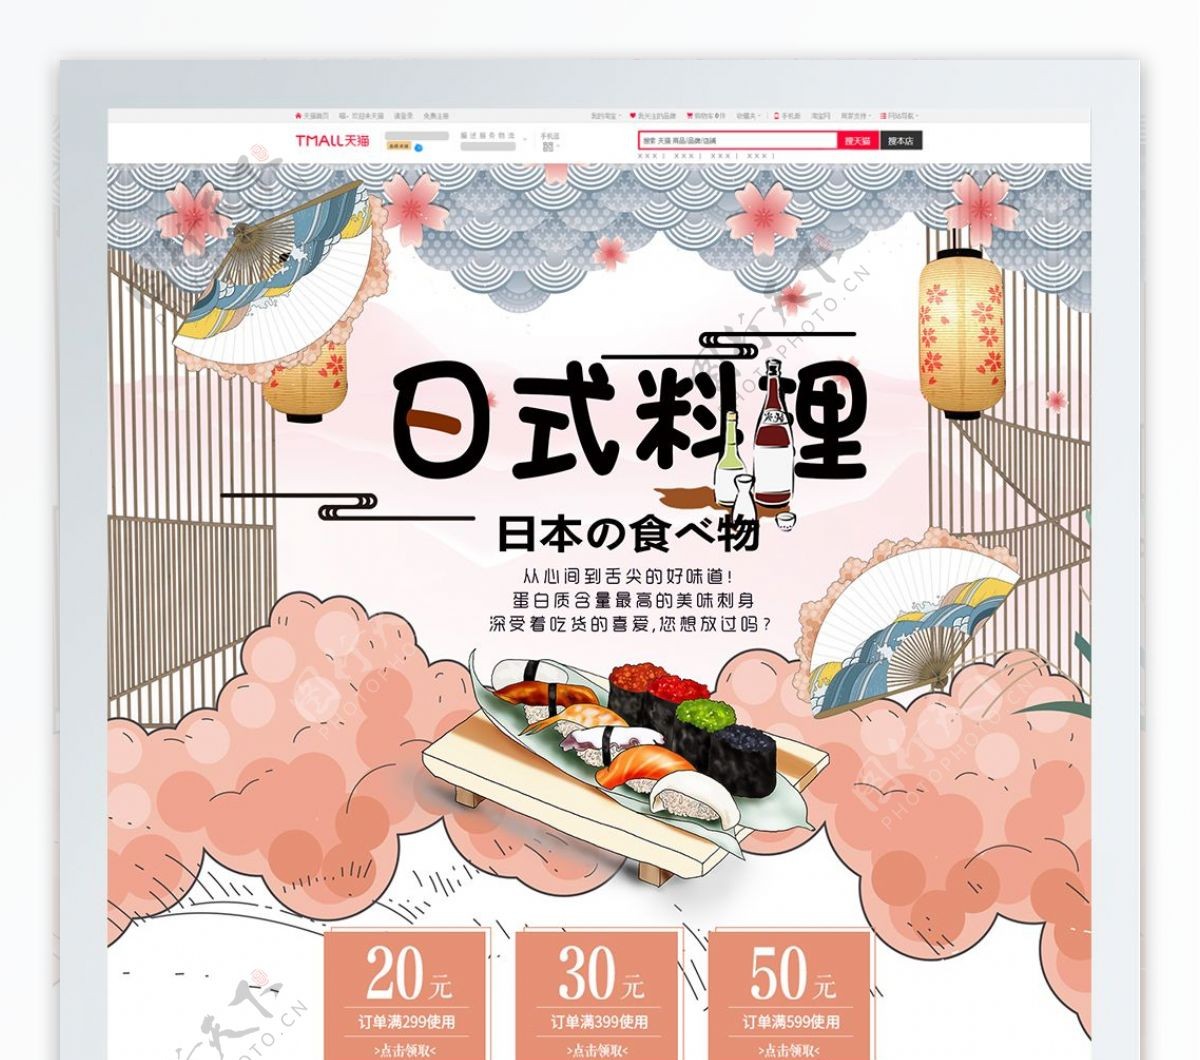 唯美清新日式料理首页目标